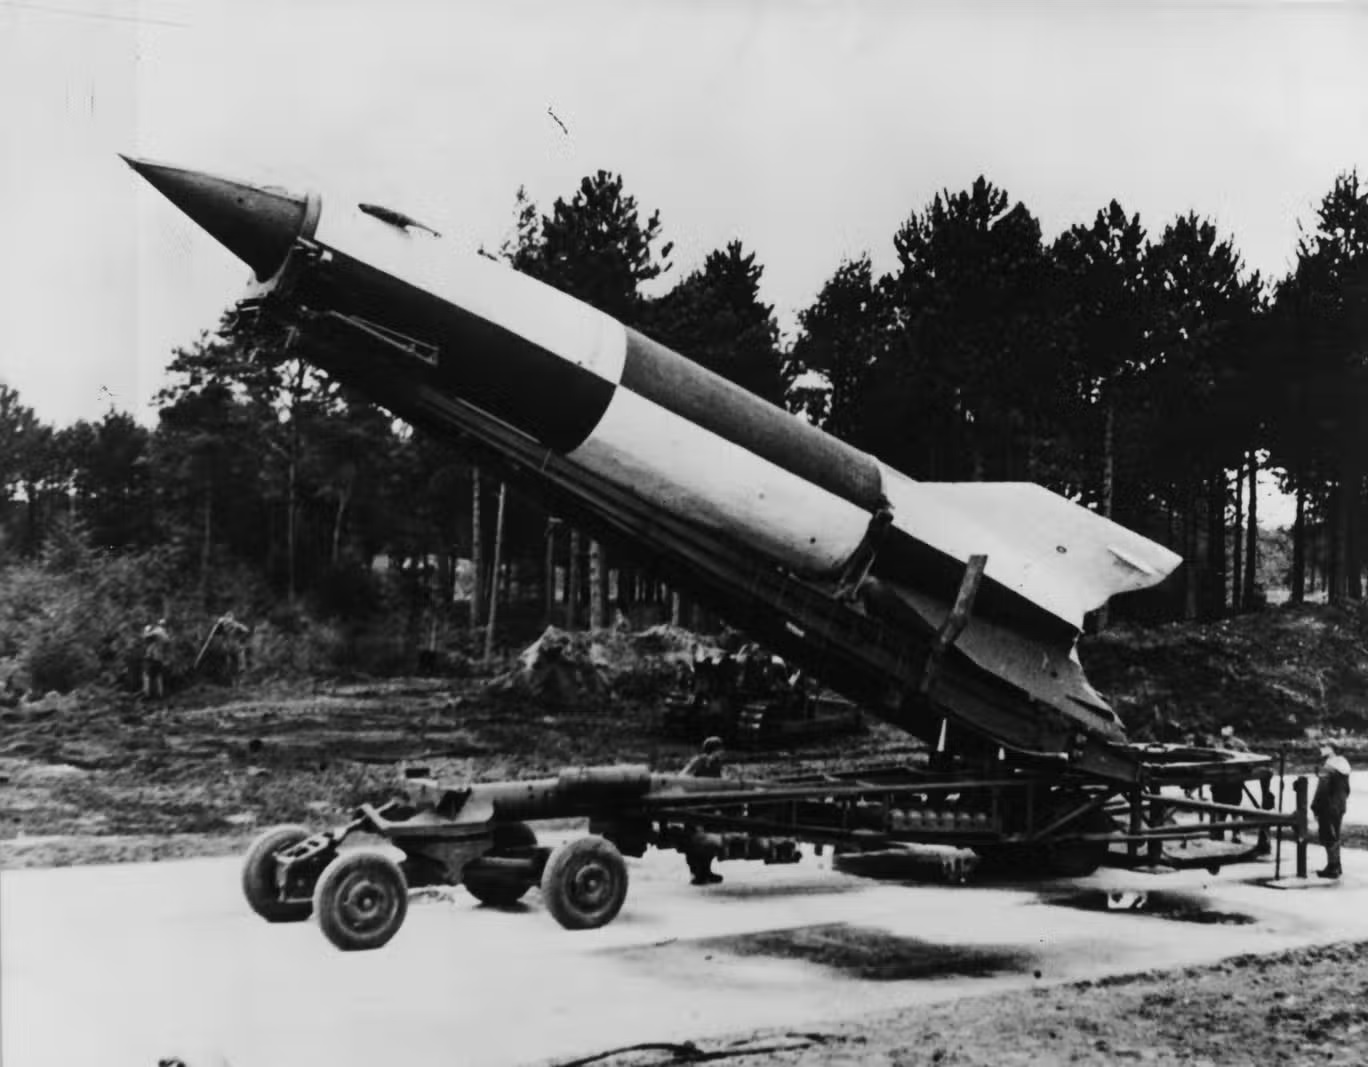 دخول صواريخ "فاو 2" الحرب جاء متأخراً لكي يحدث أي تغيير حقيقي في نتيجة الحرب العالمية الثانية (غيتي)